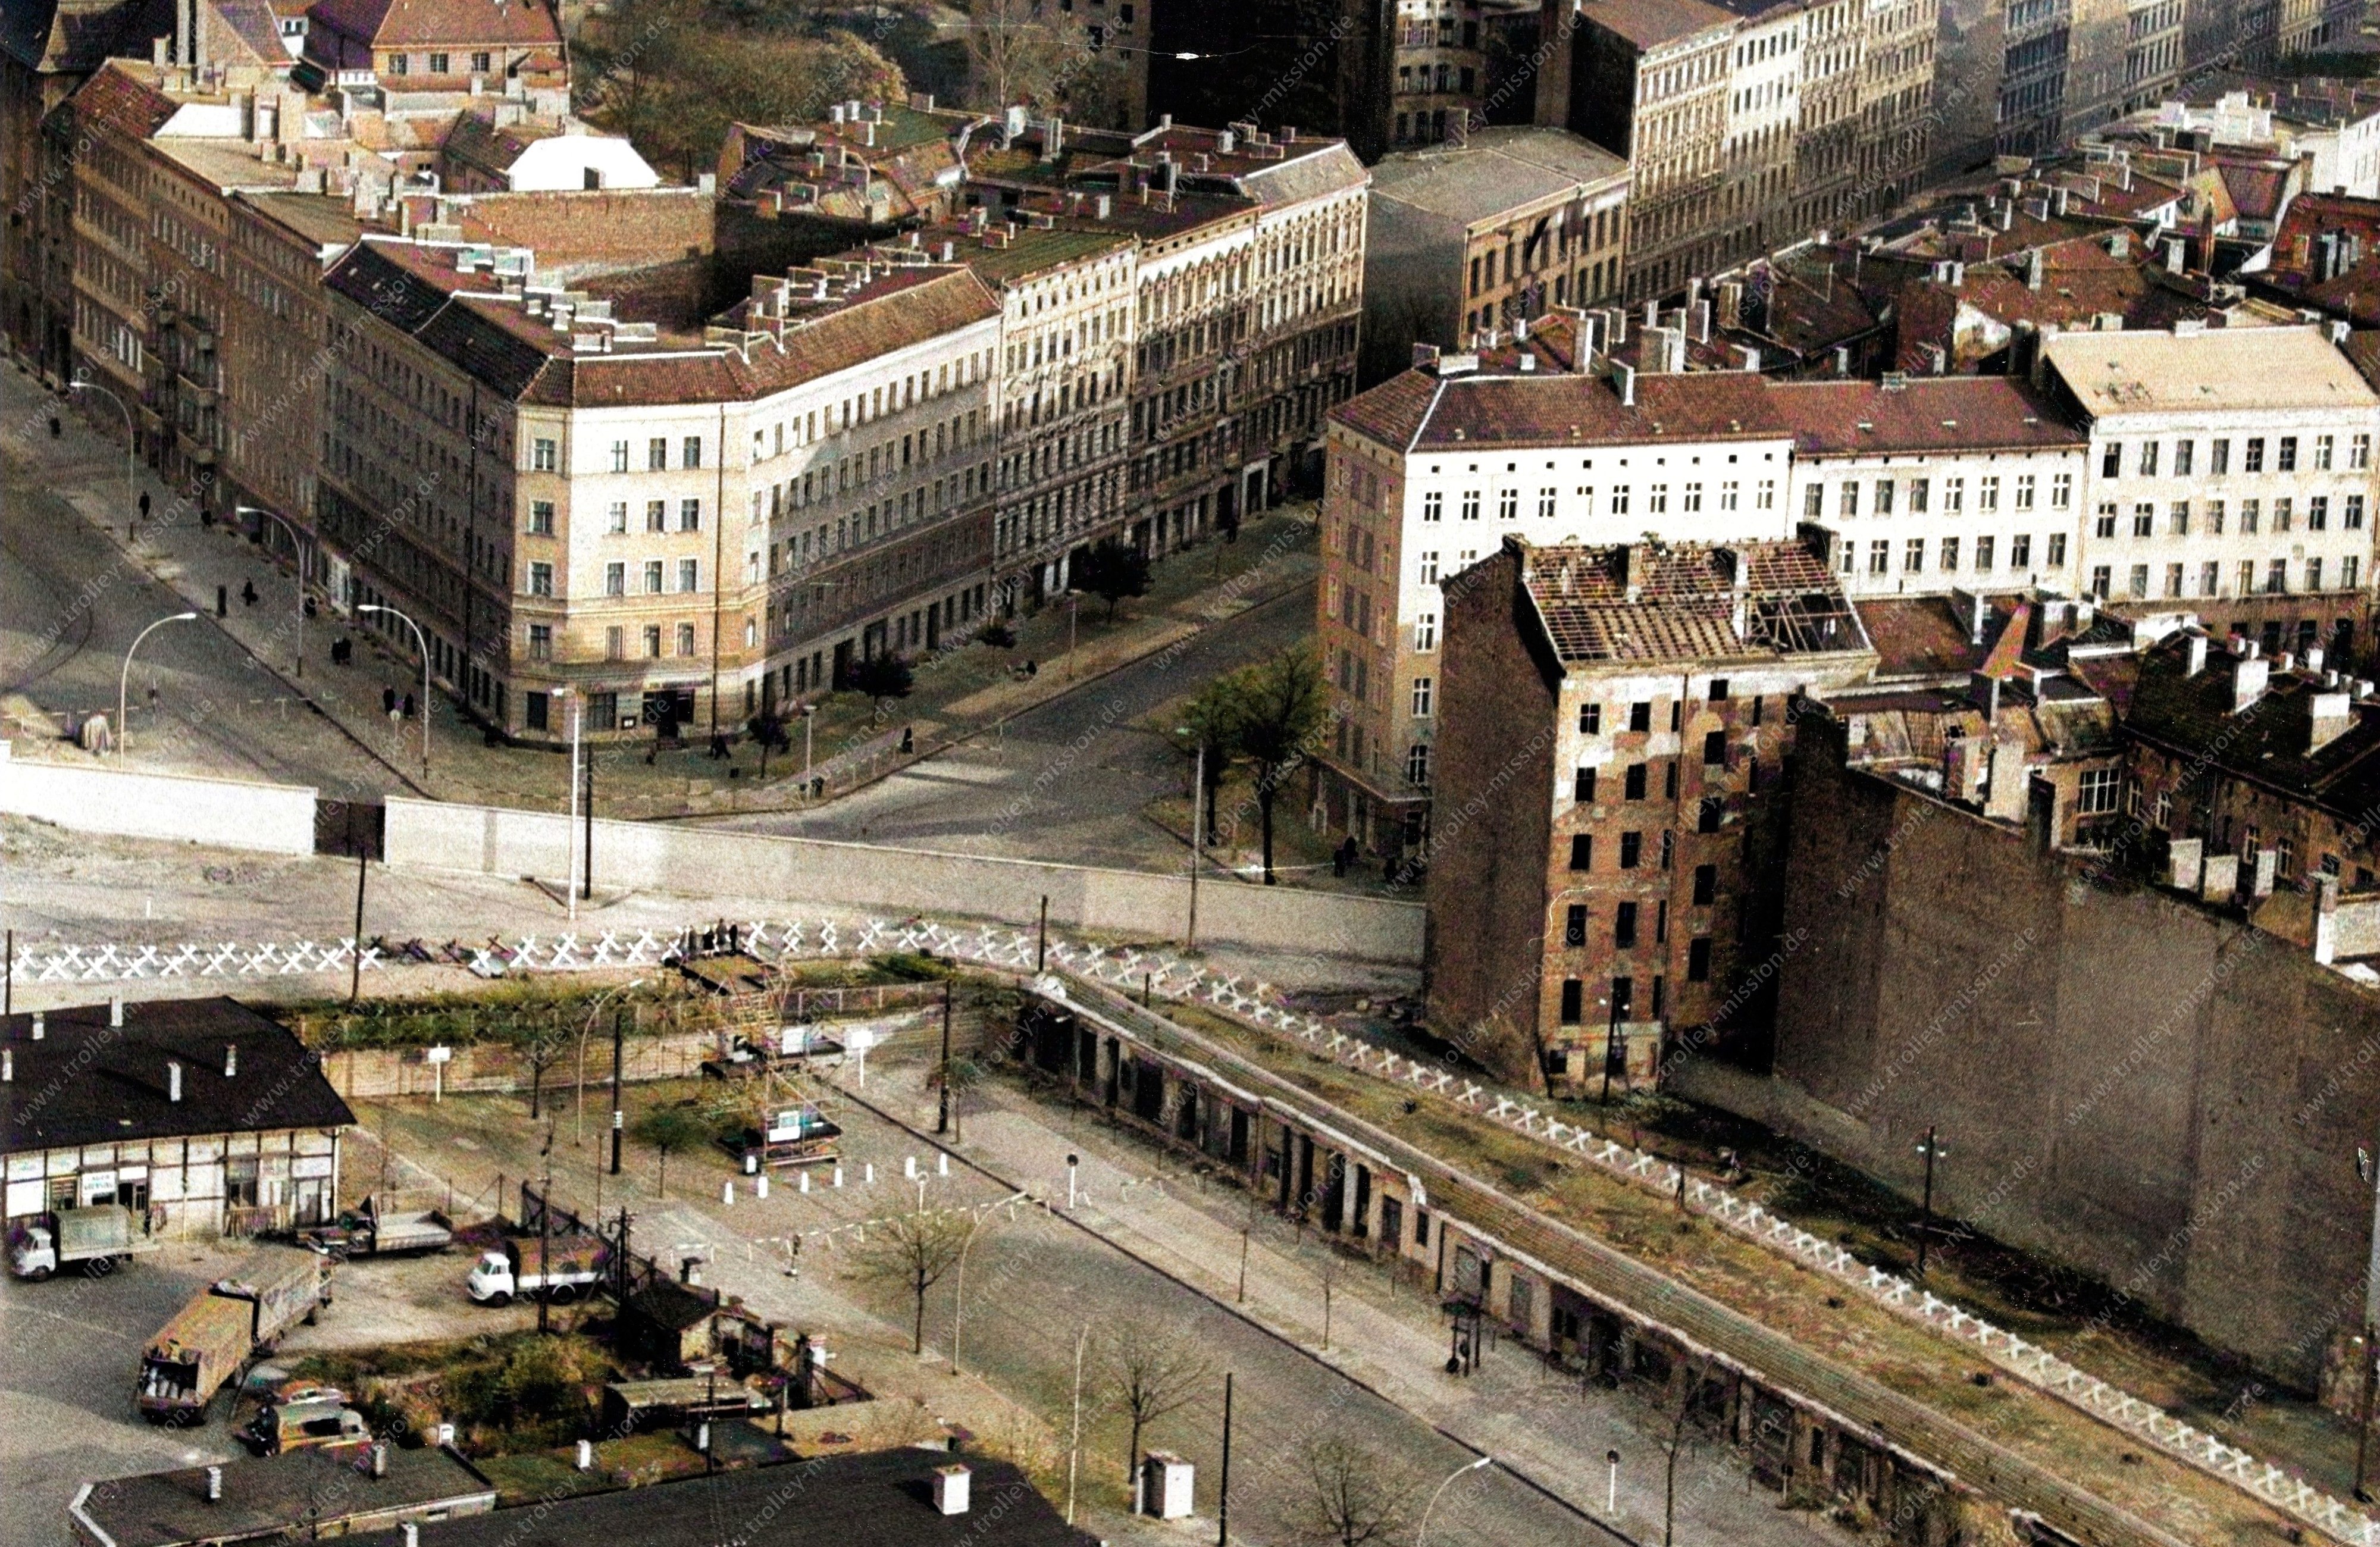 Am Ende der Bernauer Straße wurde ein provisorischer Aussichtsturm (Aussichtsplattform) für West-Berliner errichtet. Links daneben, wo einige LKW zu sehen sind, befand sich die Güterabfertigung des damaligen Güterbahnhofs der Nordbahn.